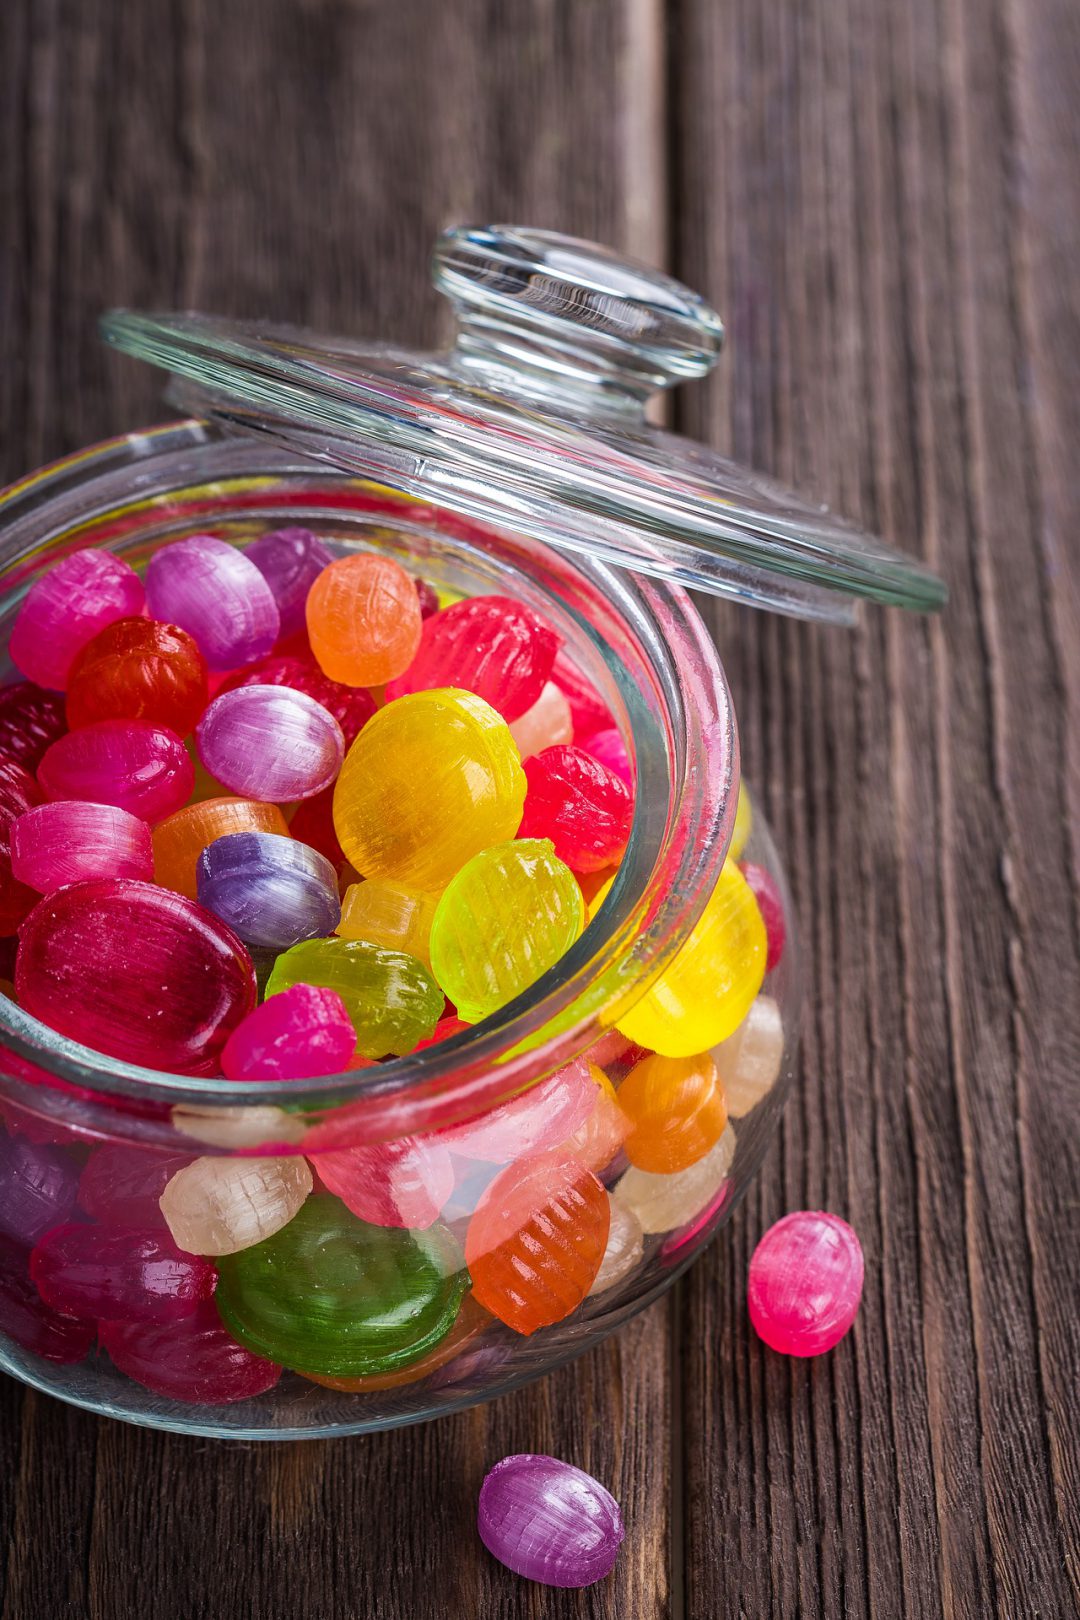 Hard candies in a jar.